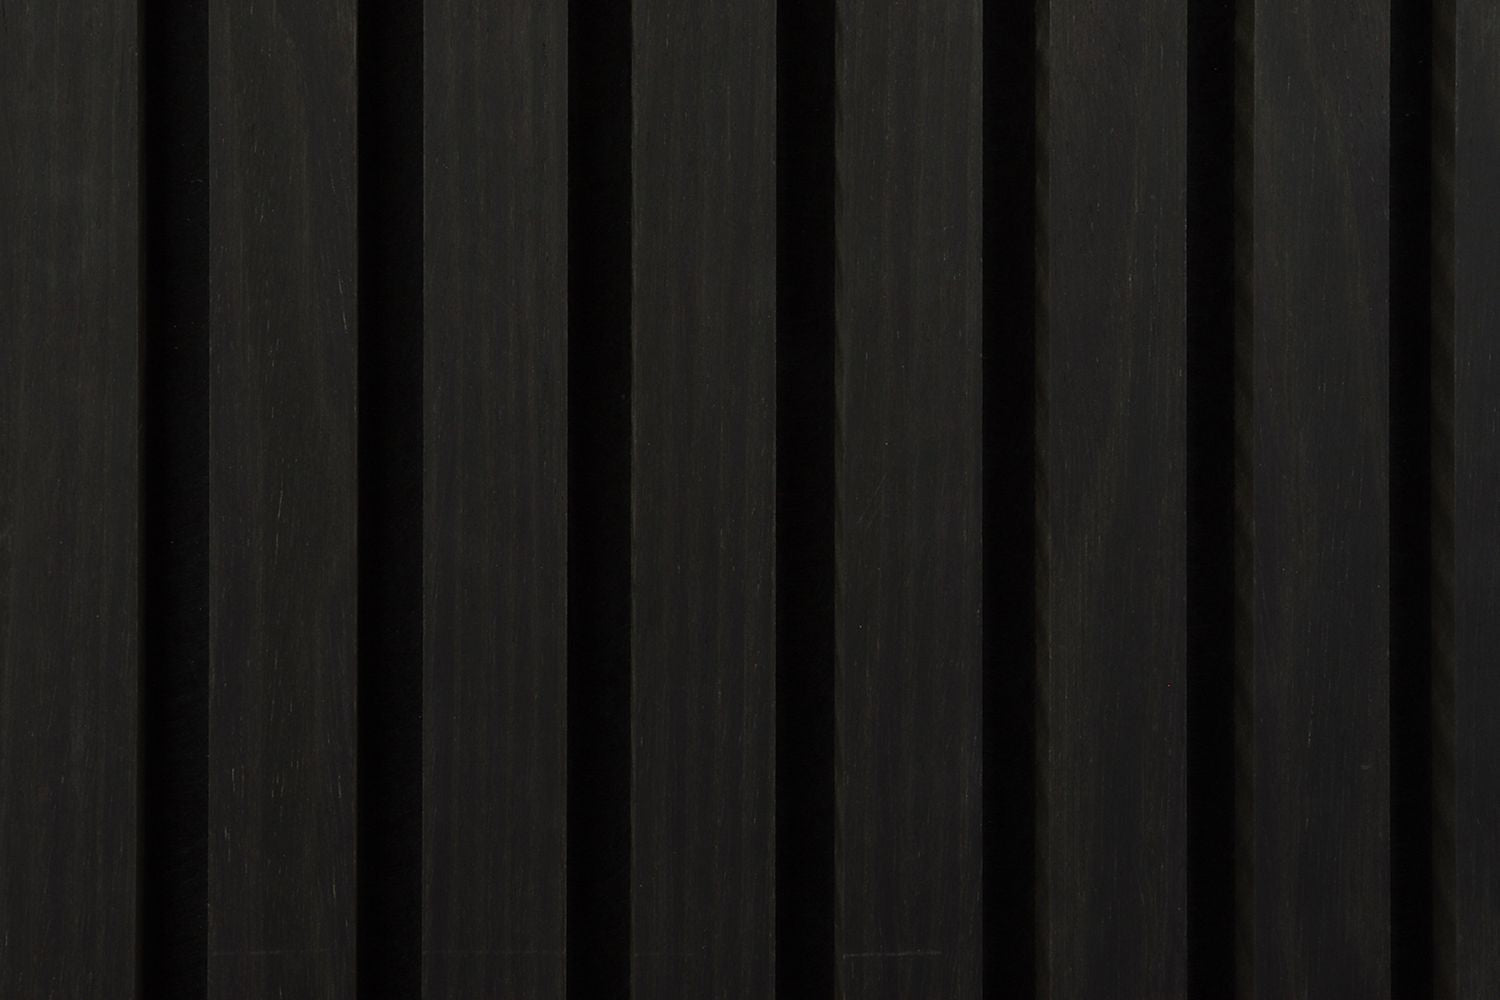 Solza Akupanel Chêne Noir 60x60cm - Par lot de 4 pièces - Solza.fr